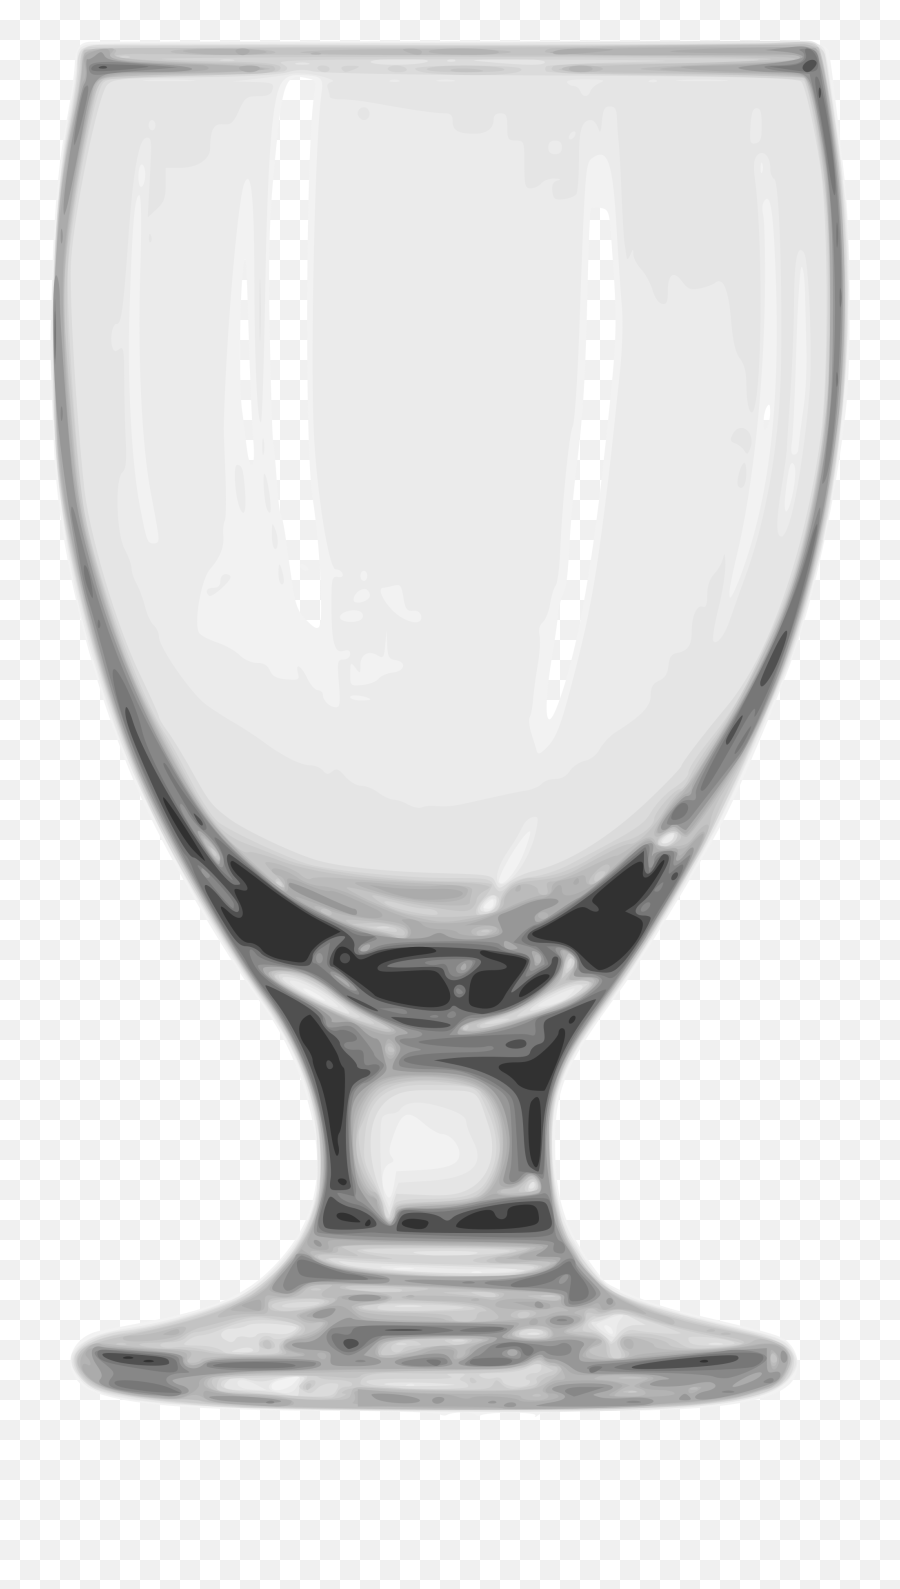 Goblet Glass Full Size Png Download Seekpng - Serveware,Goblet Png